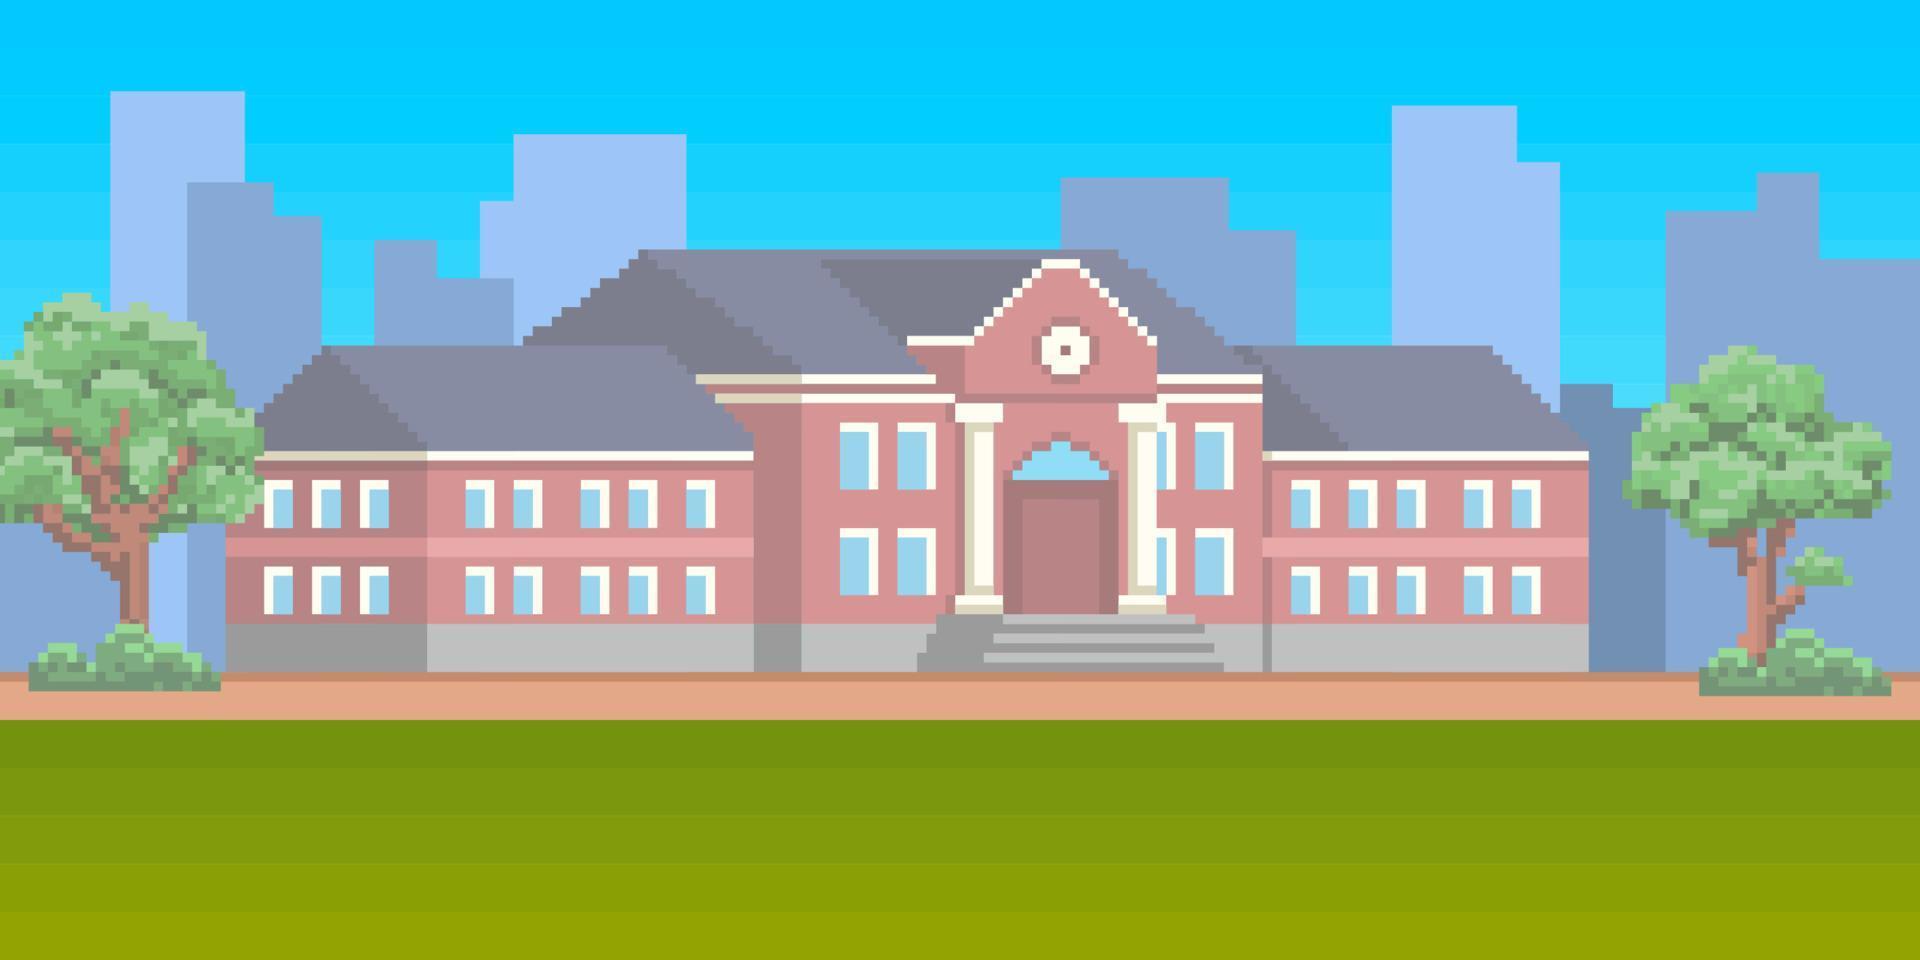 8 bit pixel kunst school- gebouw met groen gazon in voorkant. campus achtergrond voor video spel instelling vector